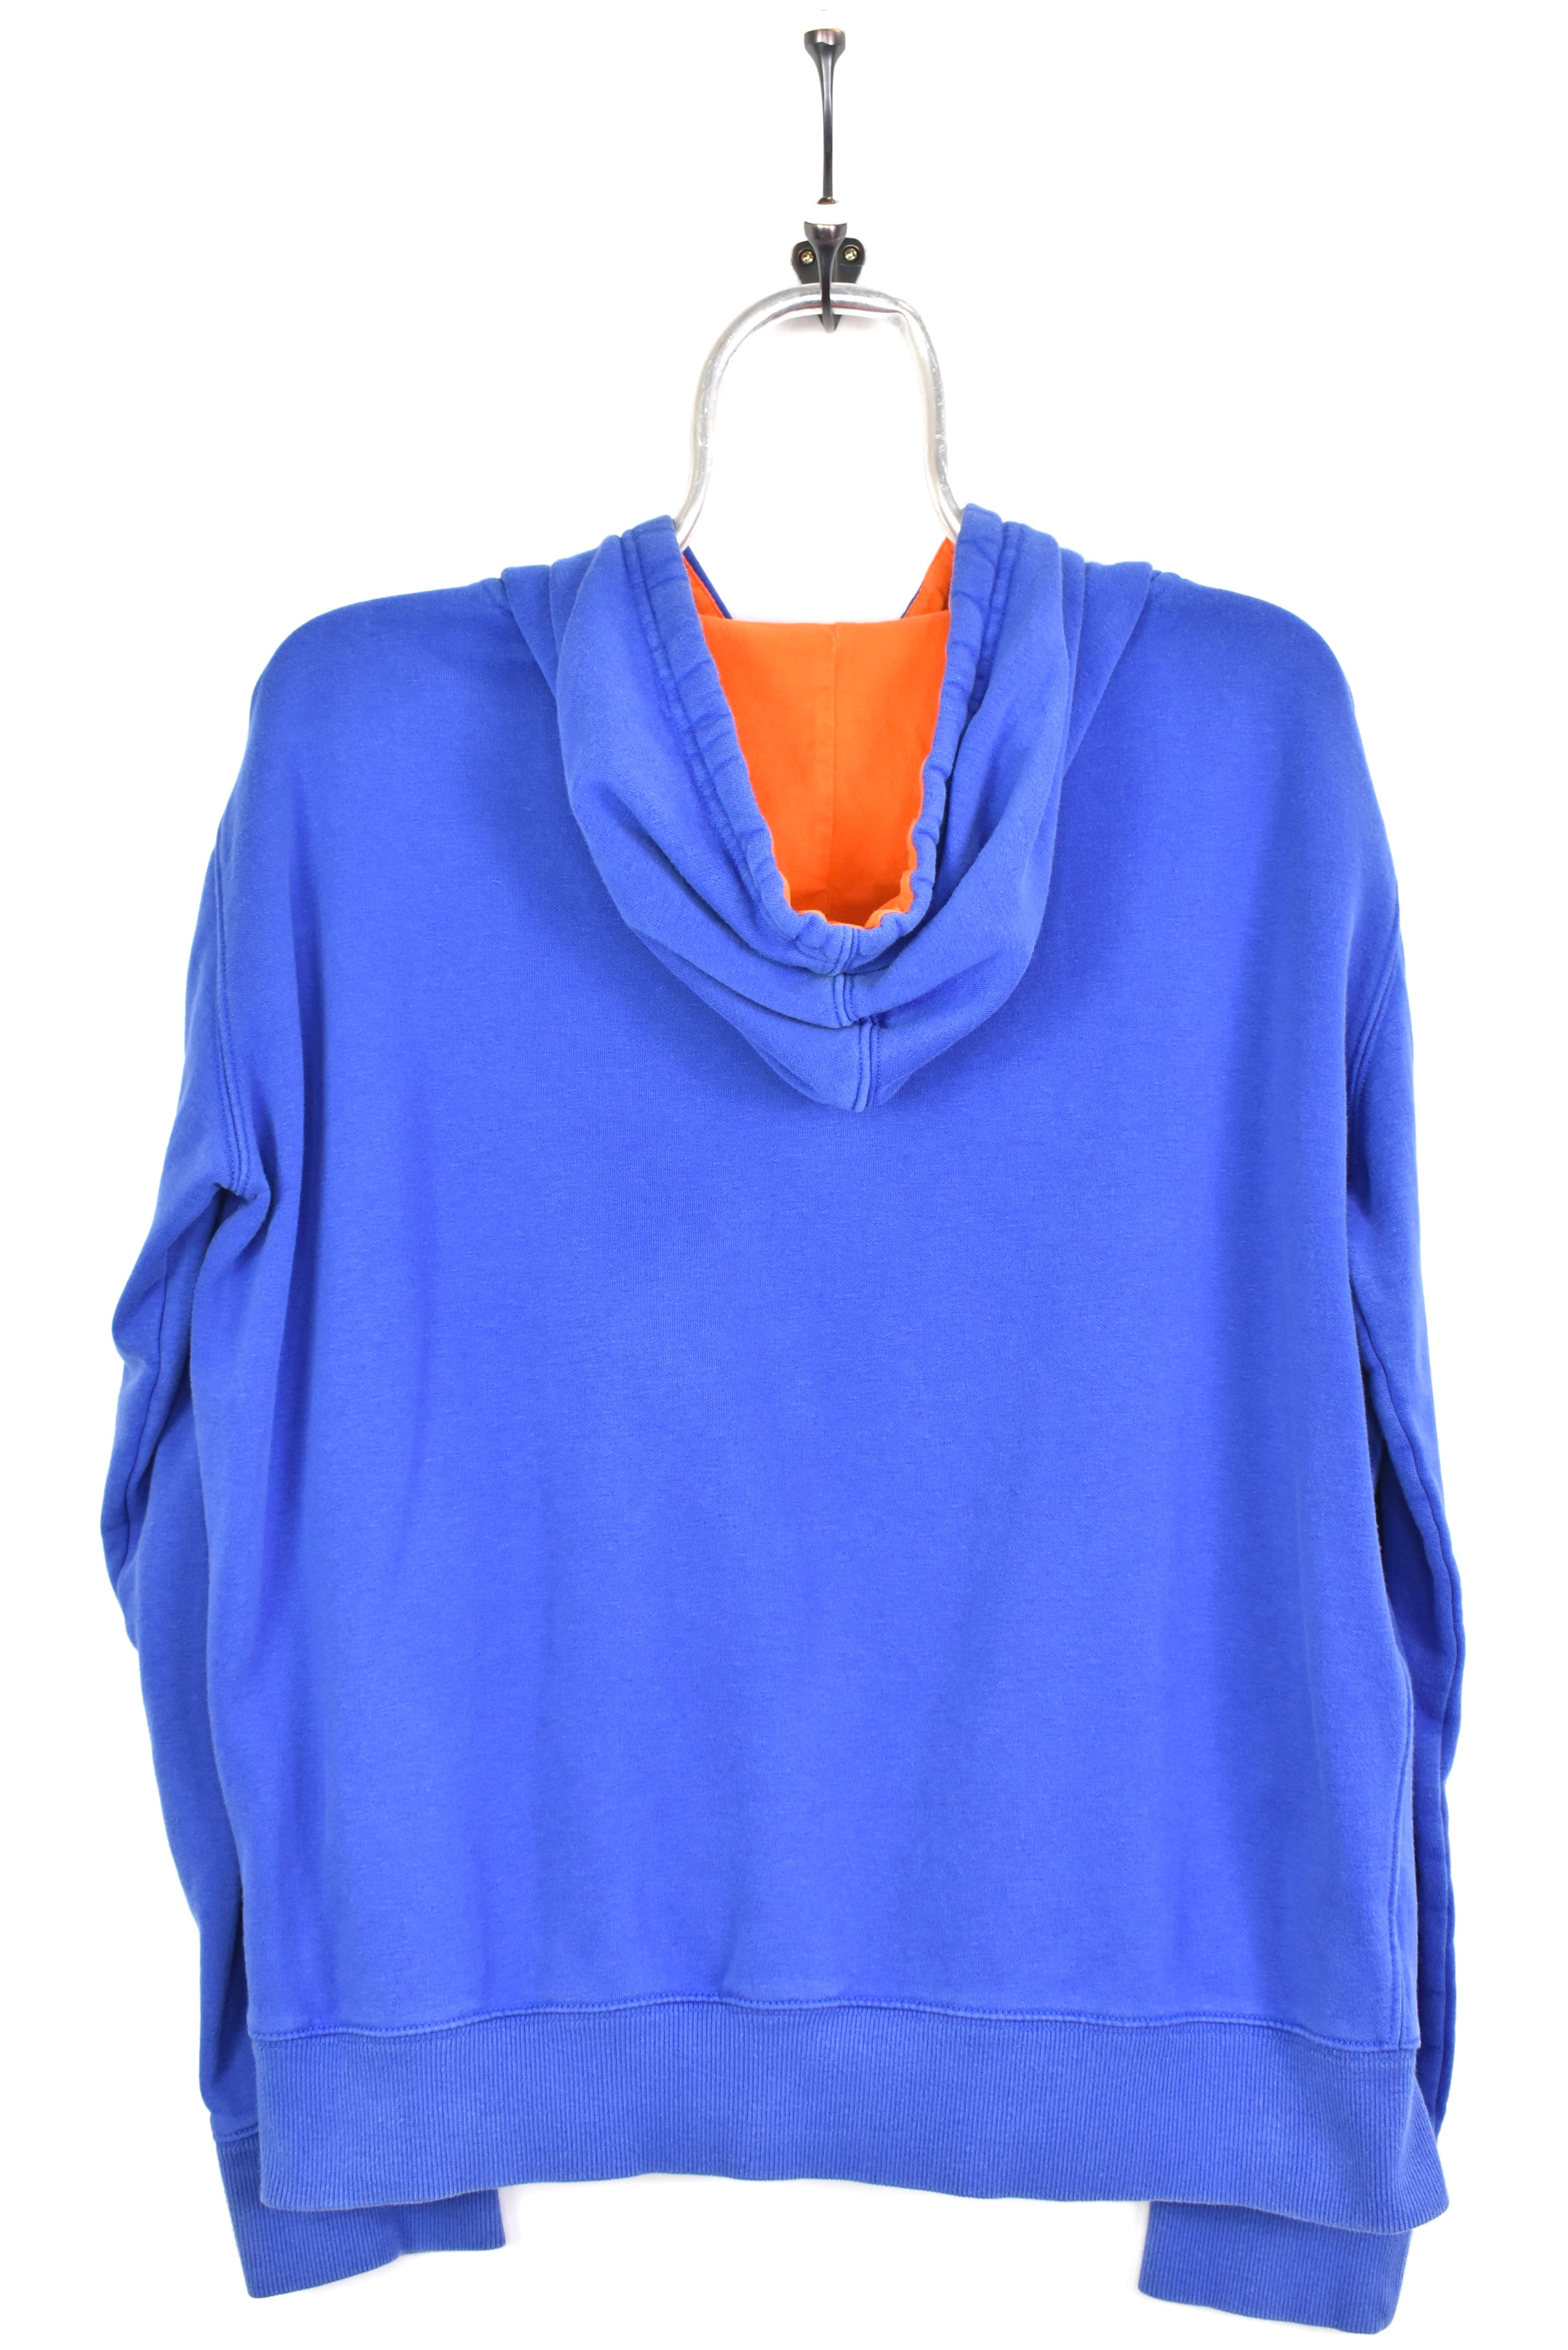 Vintage Florida University embroidered blue hoodie | Medium COLLEGE